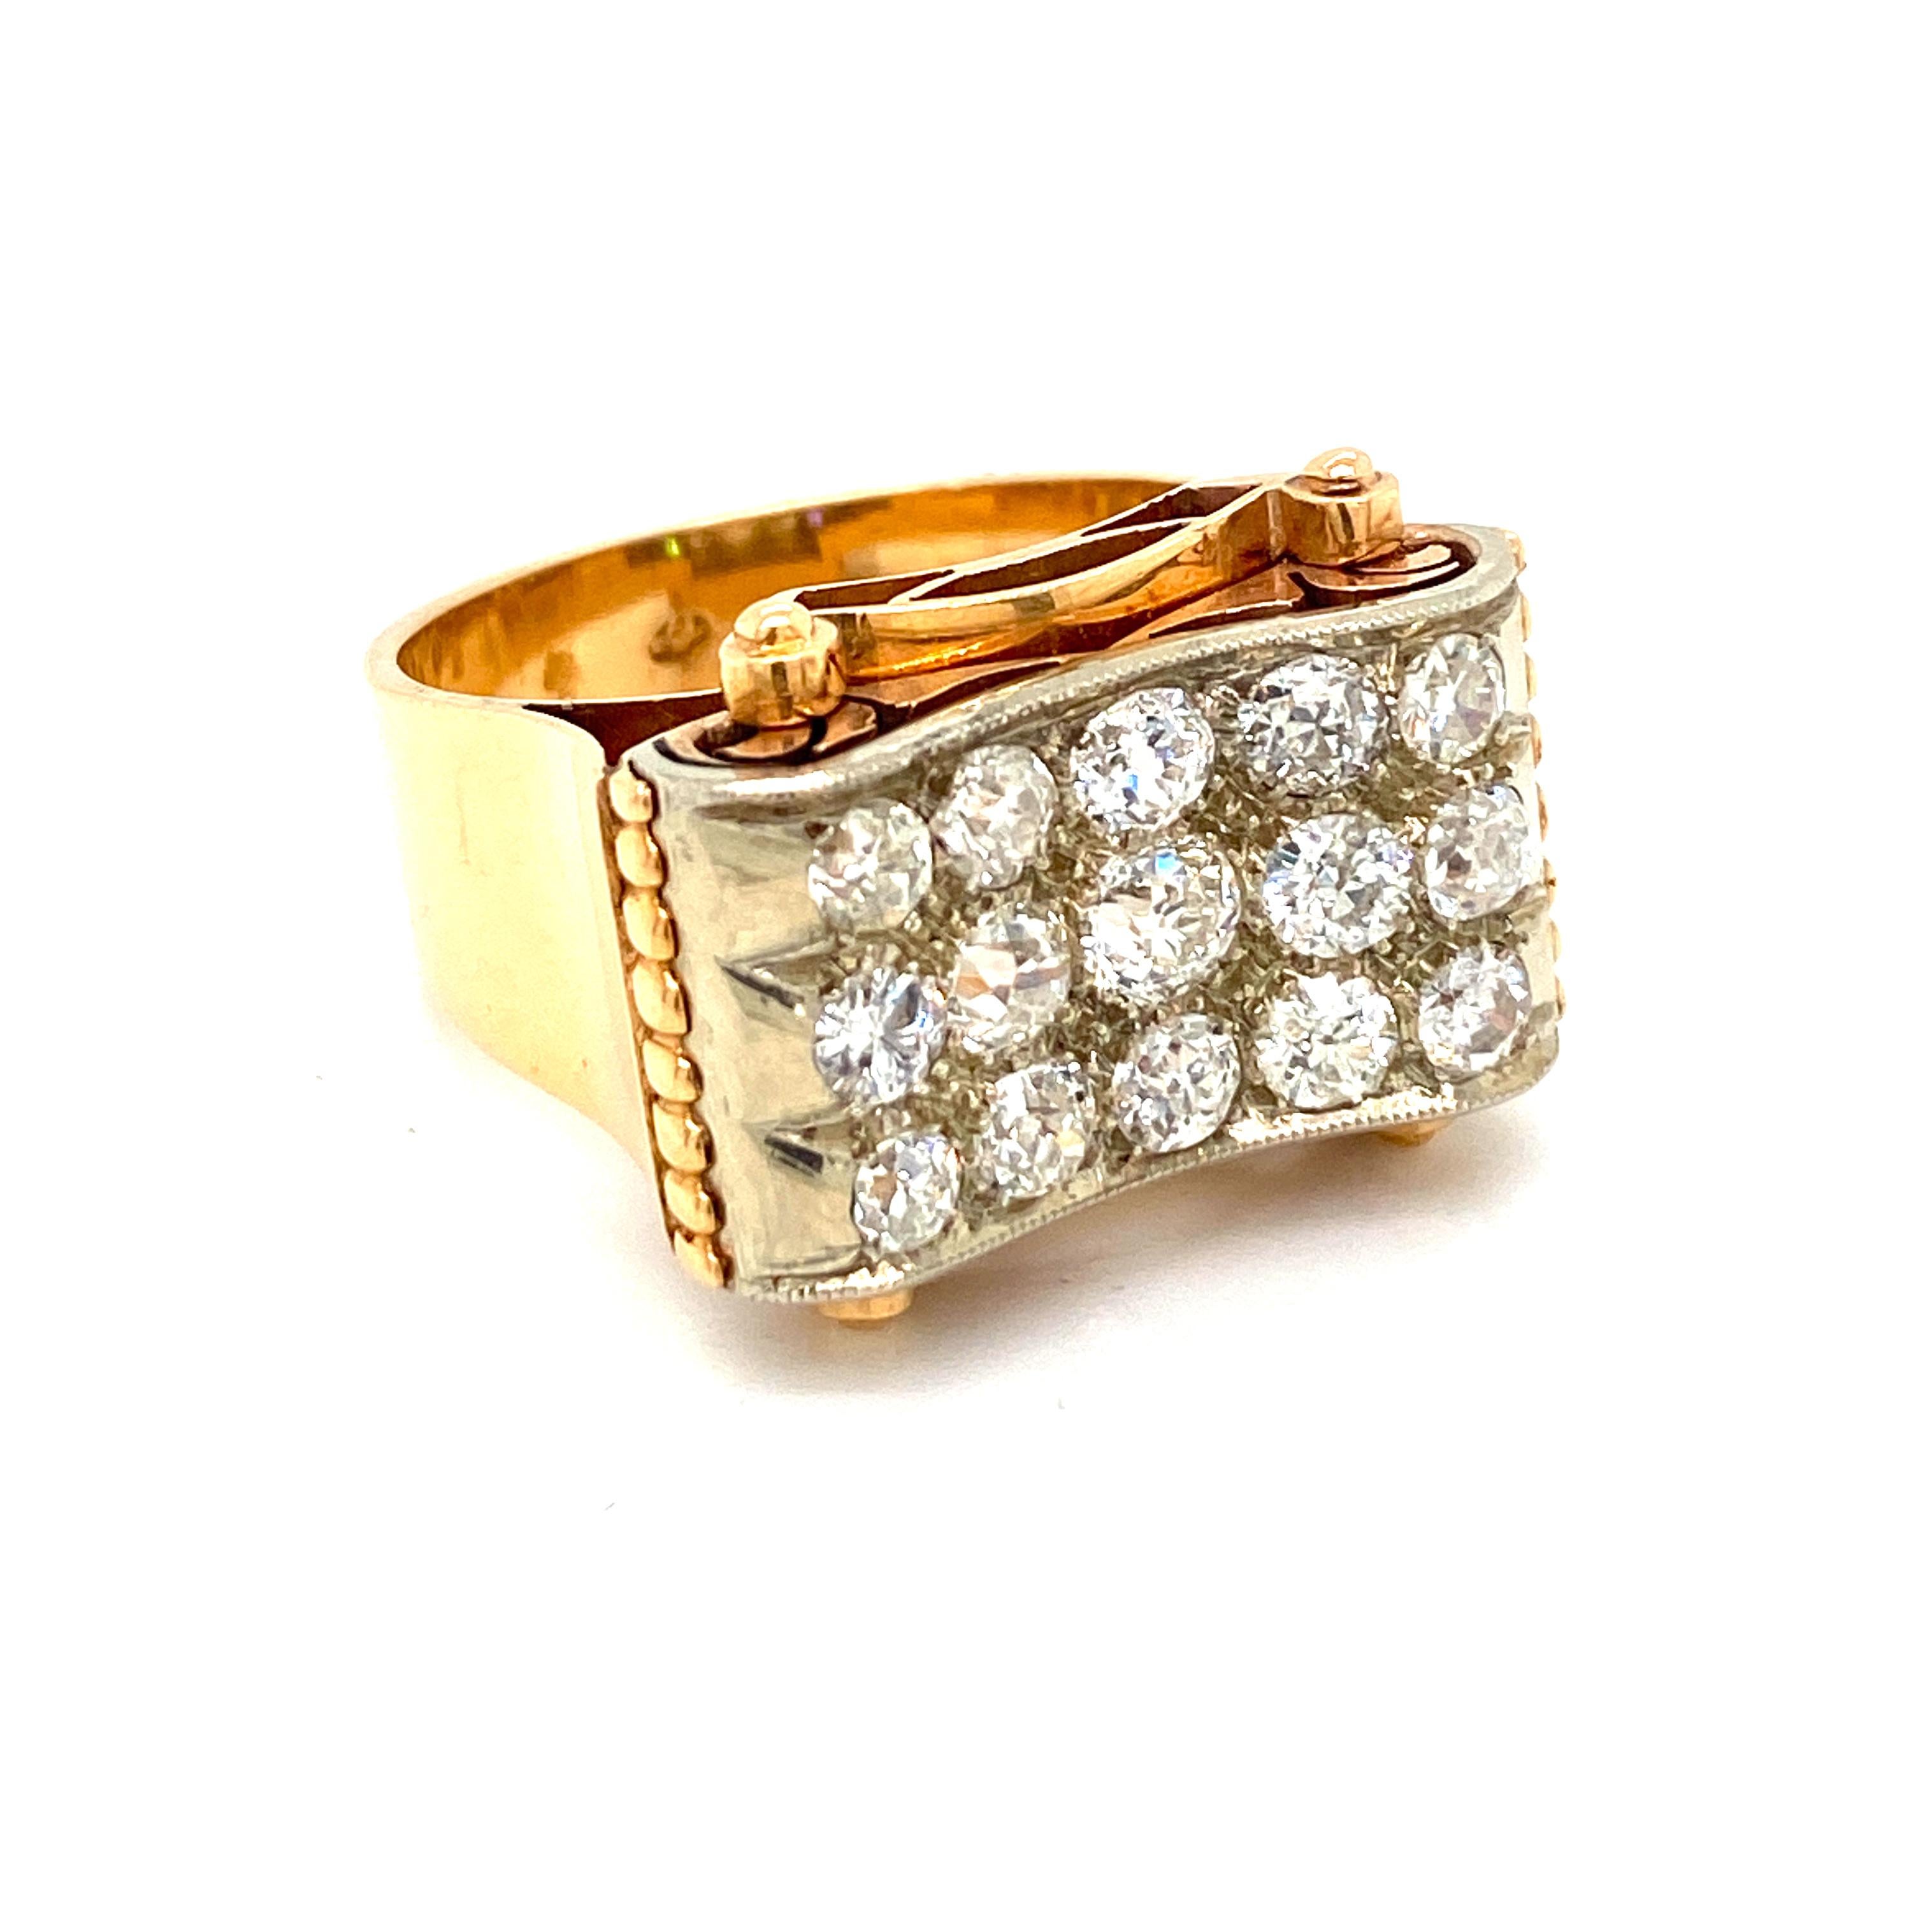 Belle bague rétro des années 1950 sertie de diamants taille ancienne d'un poids total approximatif de 3,30 carats, de couleur G-H et de pureté VVS. 
Fabriqué à la main en or jaune et blanc 18k.

ÉTAT : Usagé - Excellent 10/10
MÉTAL : Or jaune et